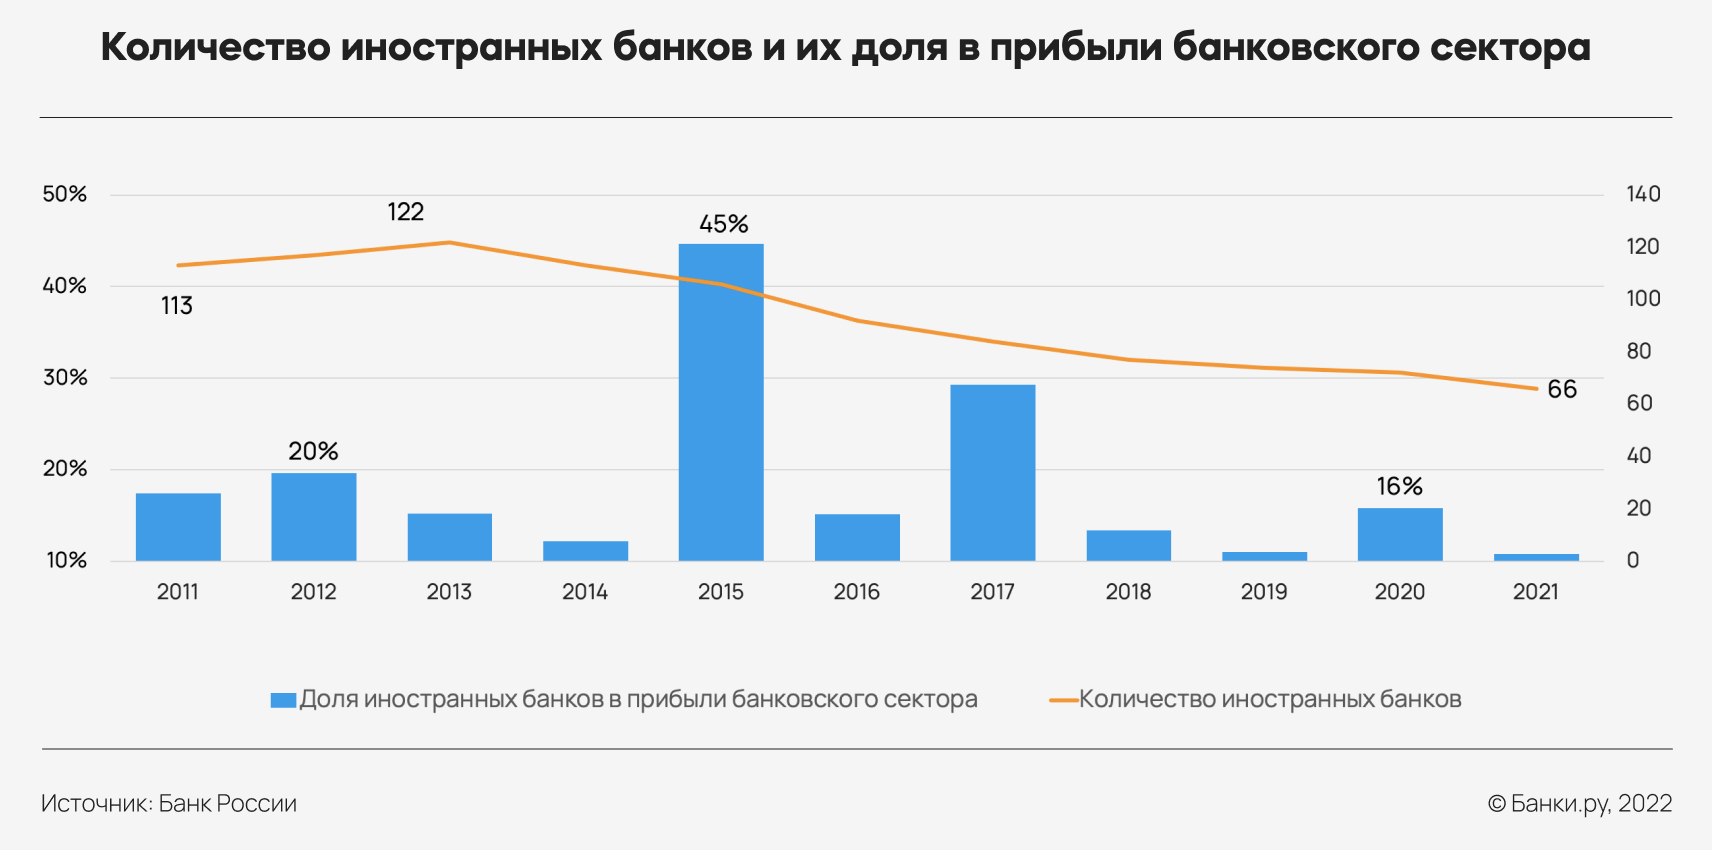 Почему иностранные банки утрачивают свое влияние на российском рынке